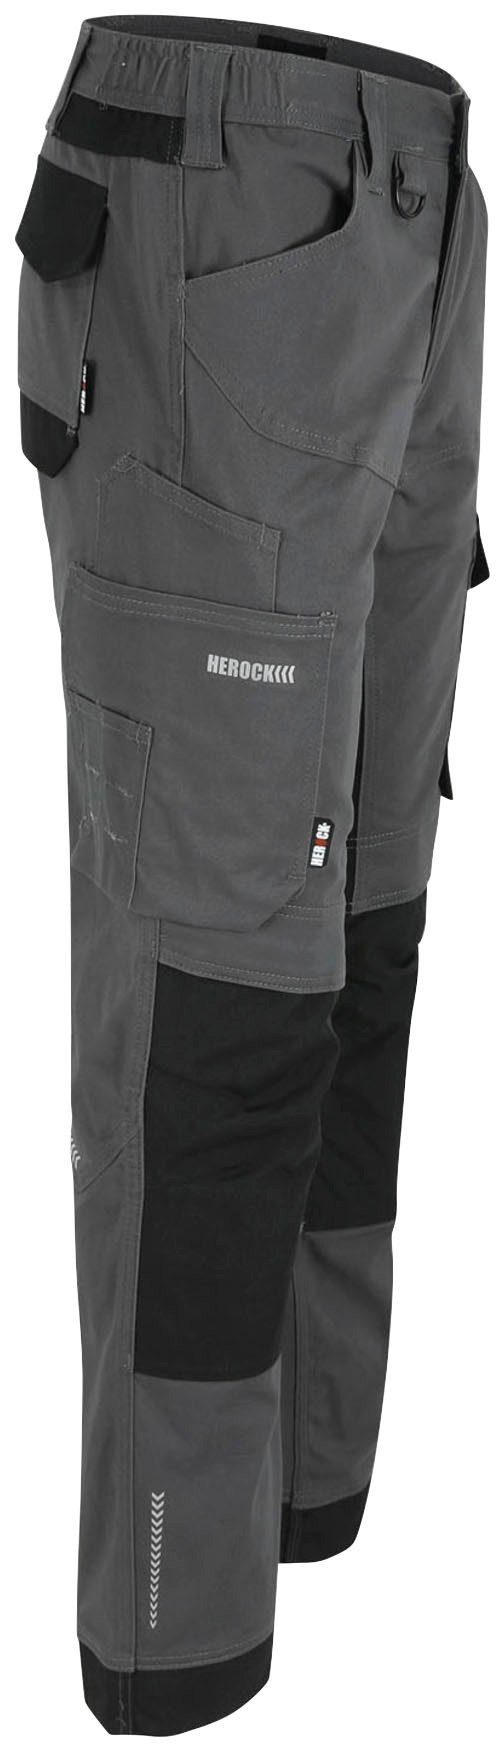 XENI Herock Stretch, und grau Multi-pocket, Arbeitshose bequem weich Baumwolle, wasserabweisend,